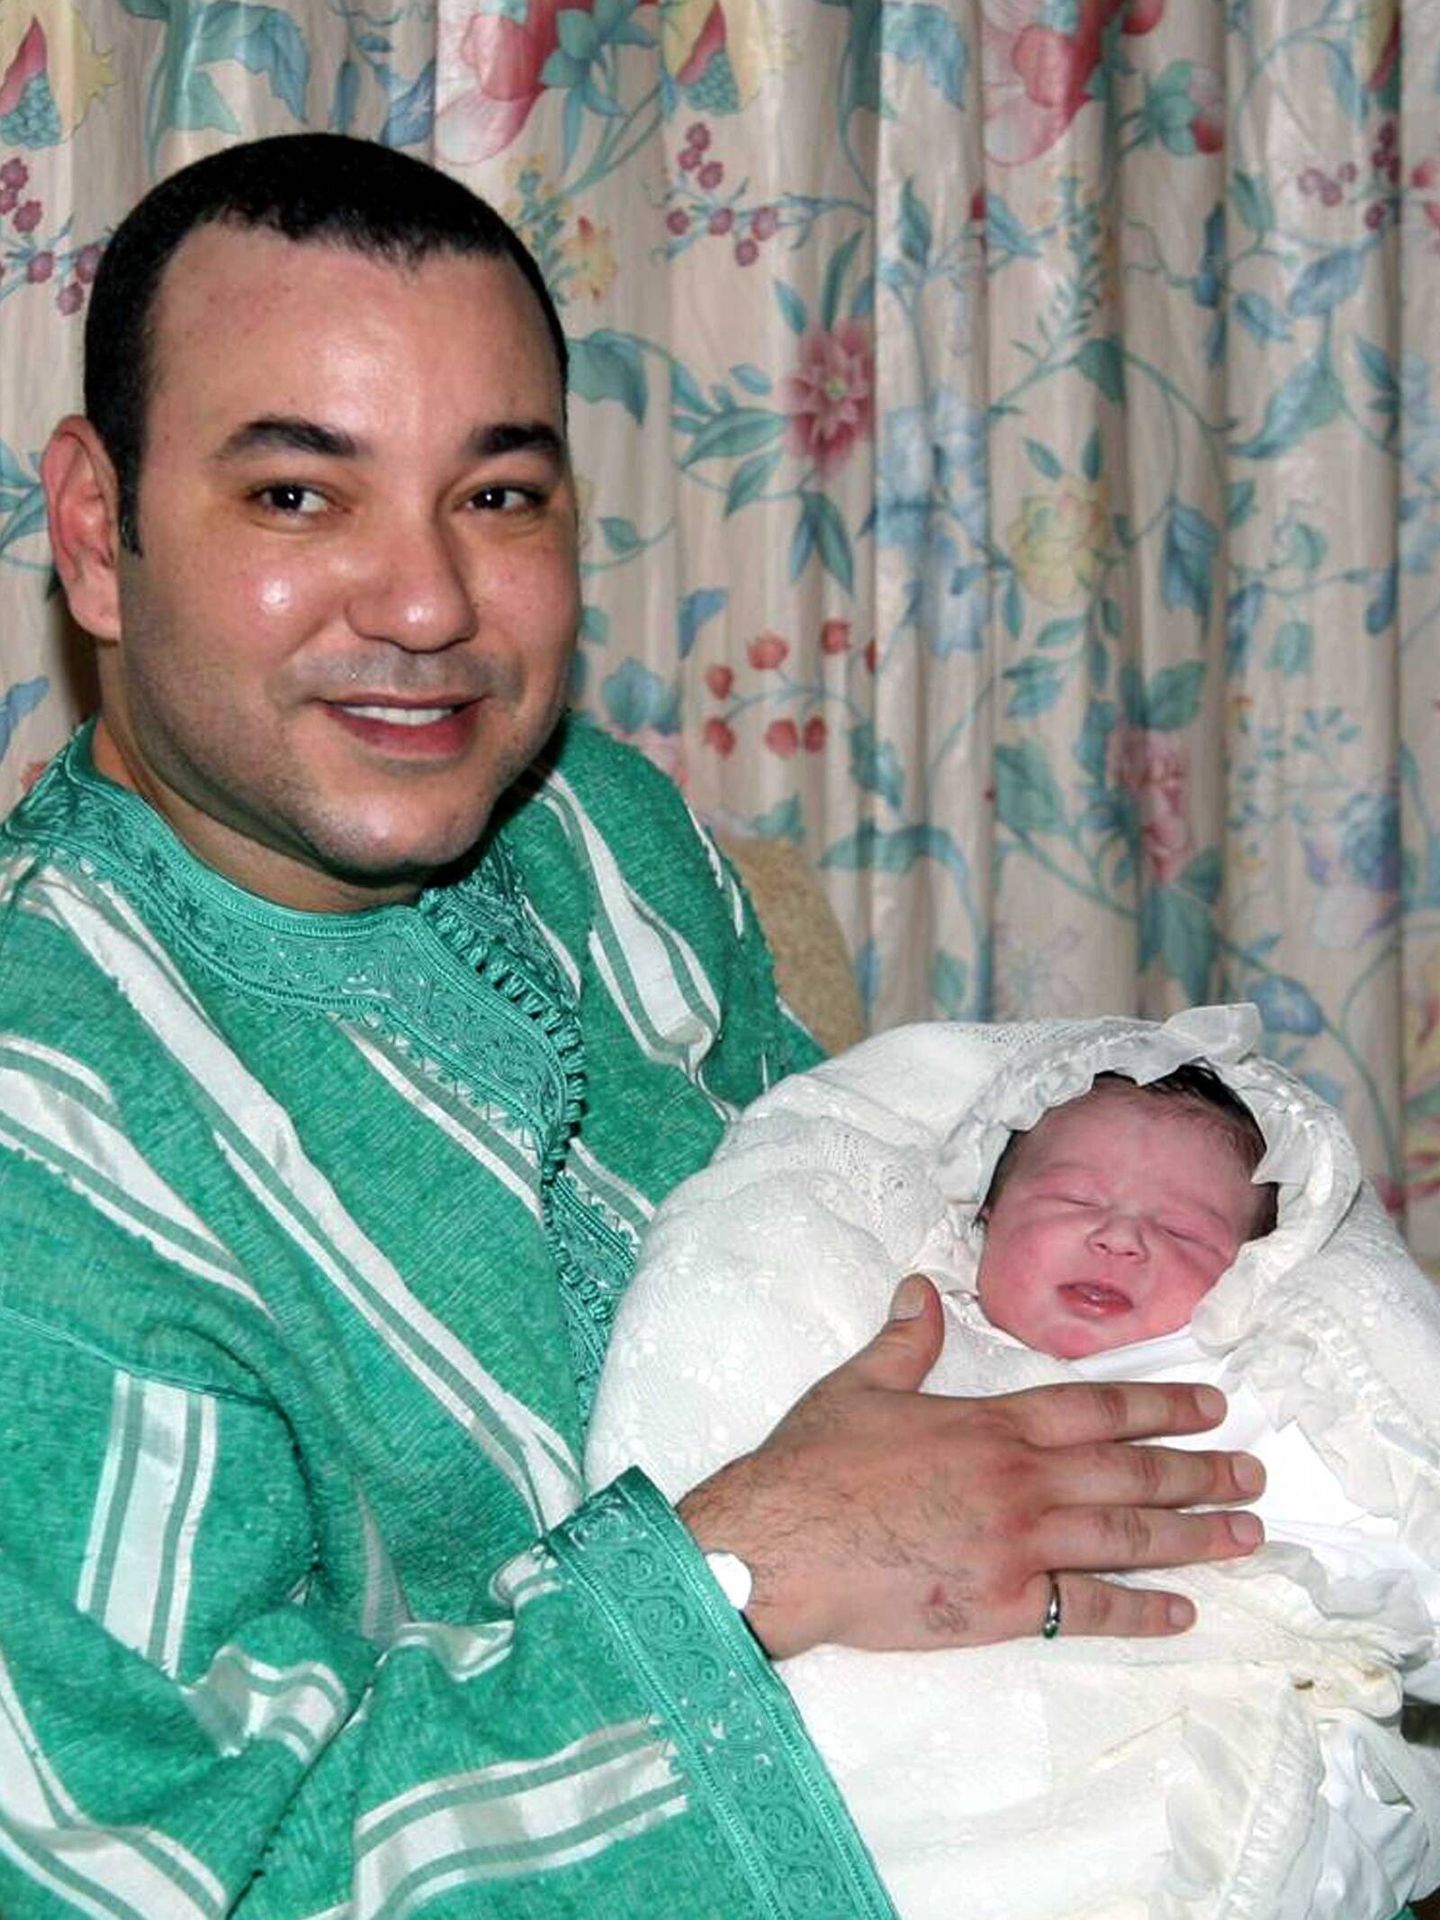 El rey Mohamed VI con su hija recién nacida en brazos. (Cordon Press)